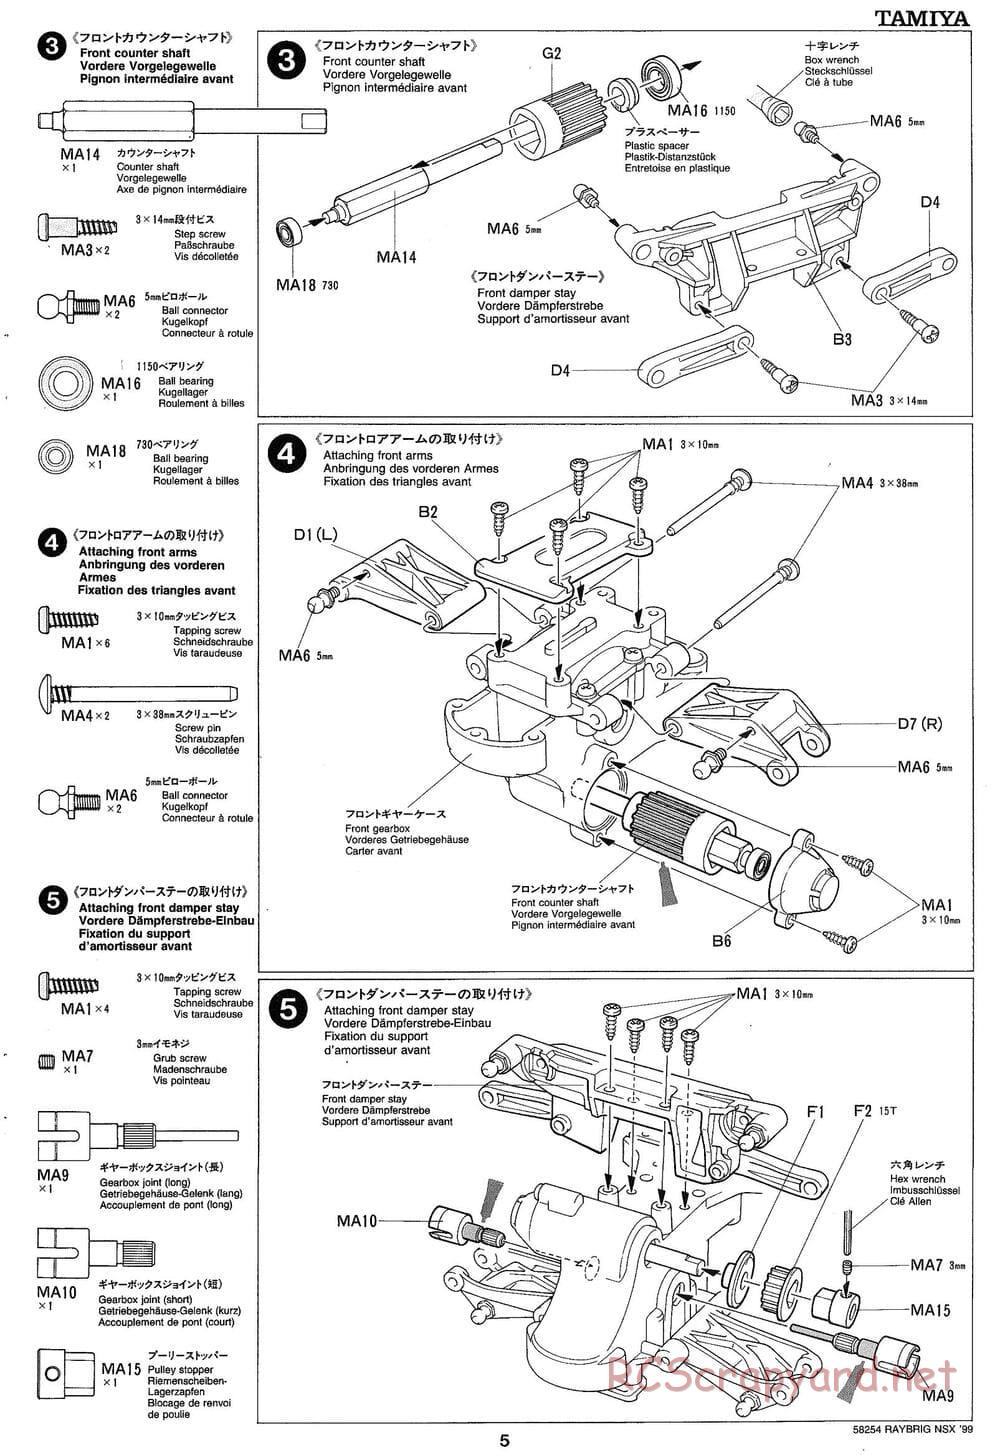 Tamiya - Raybrig NSX 99 - TA-03R Chassis - Manual - Page 5